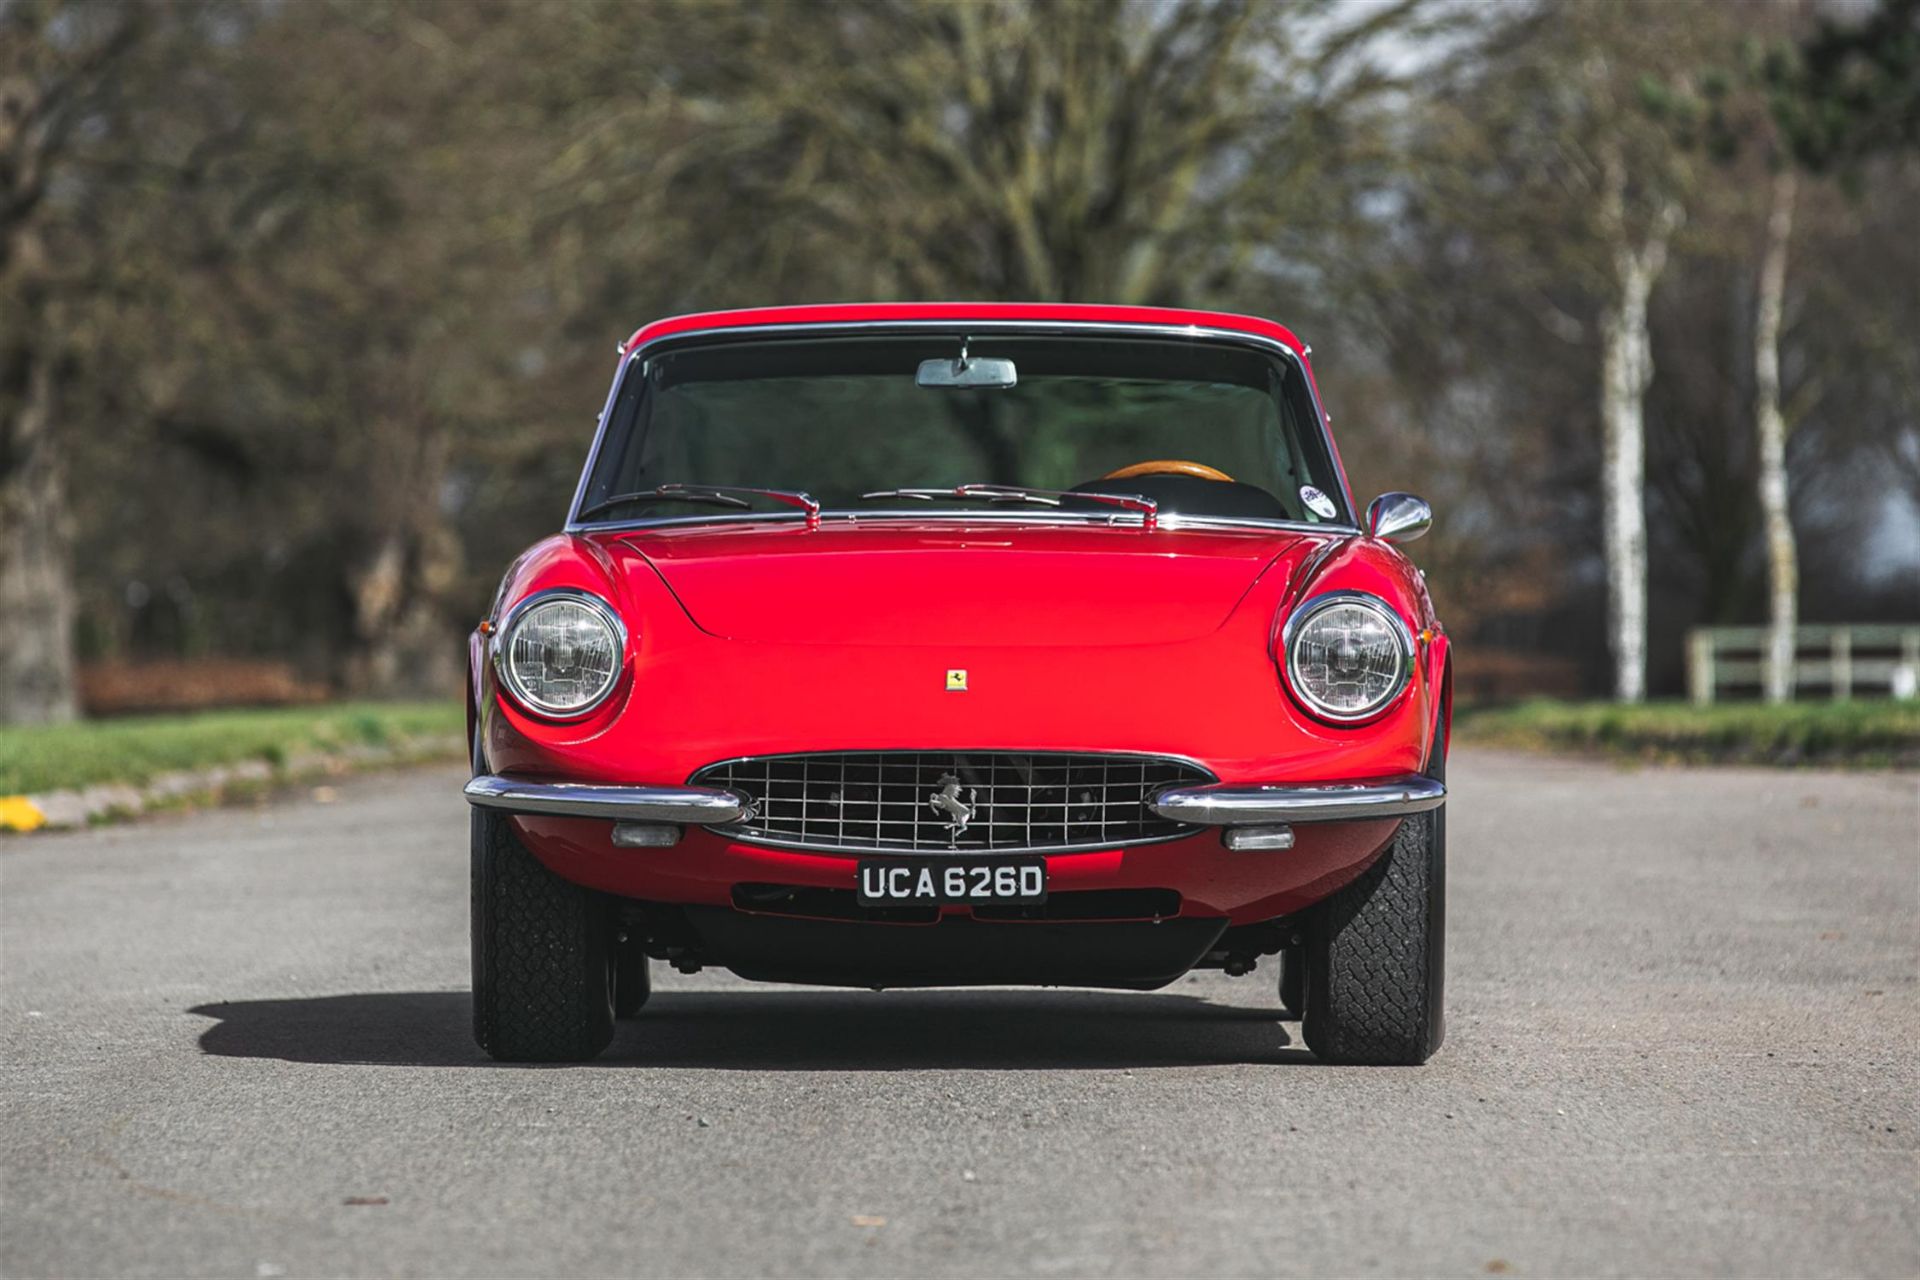 1968 Ferrari 330GTC by Pininfarina - Image 2 of 10